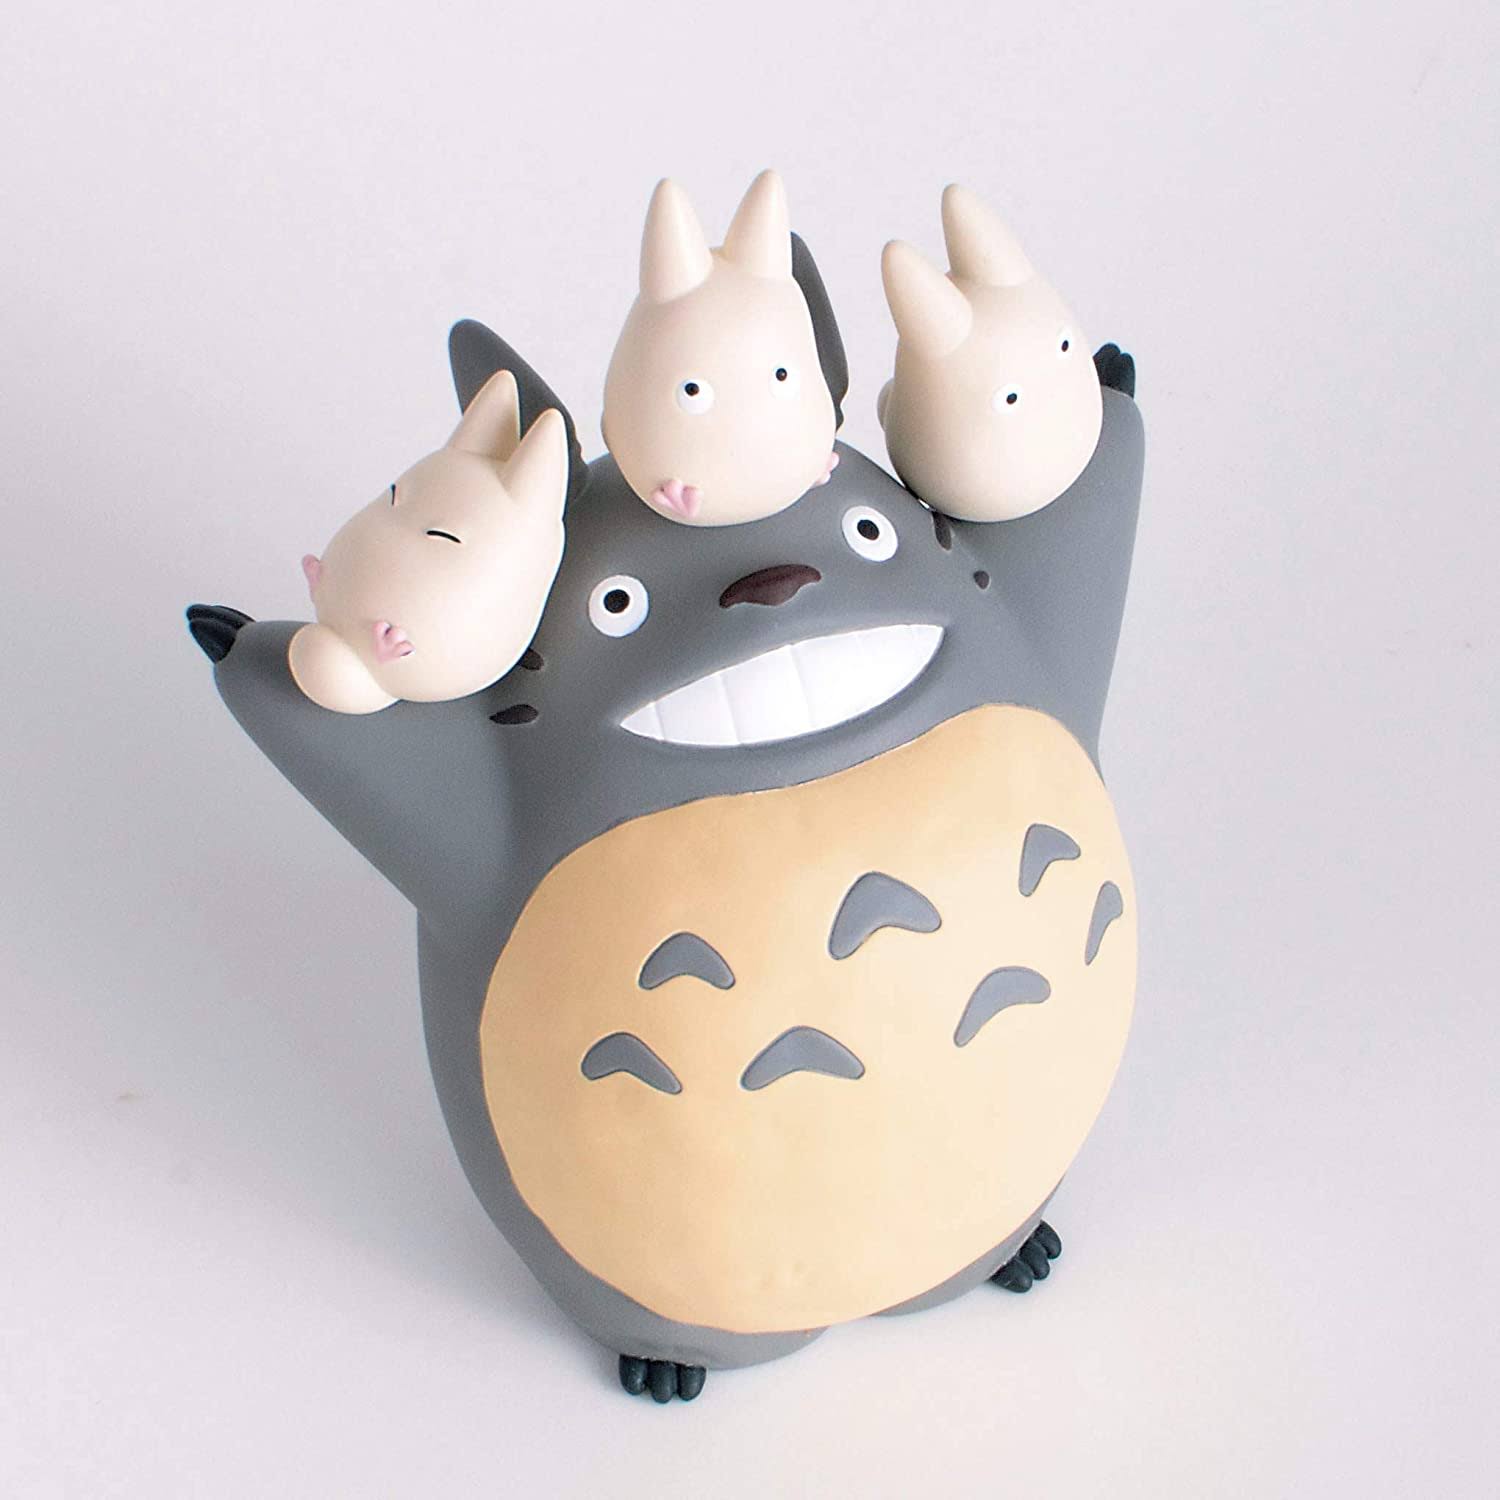 FIGS055 – Totoro 13pcs – NOS-83 – 2